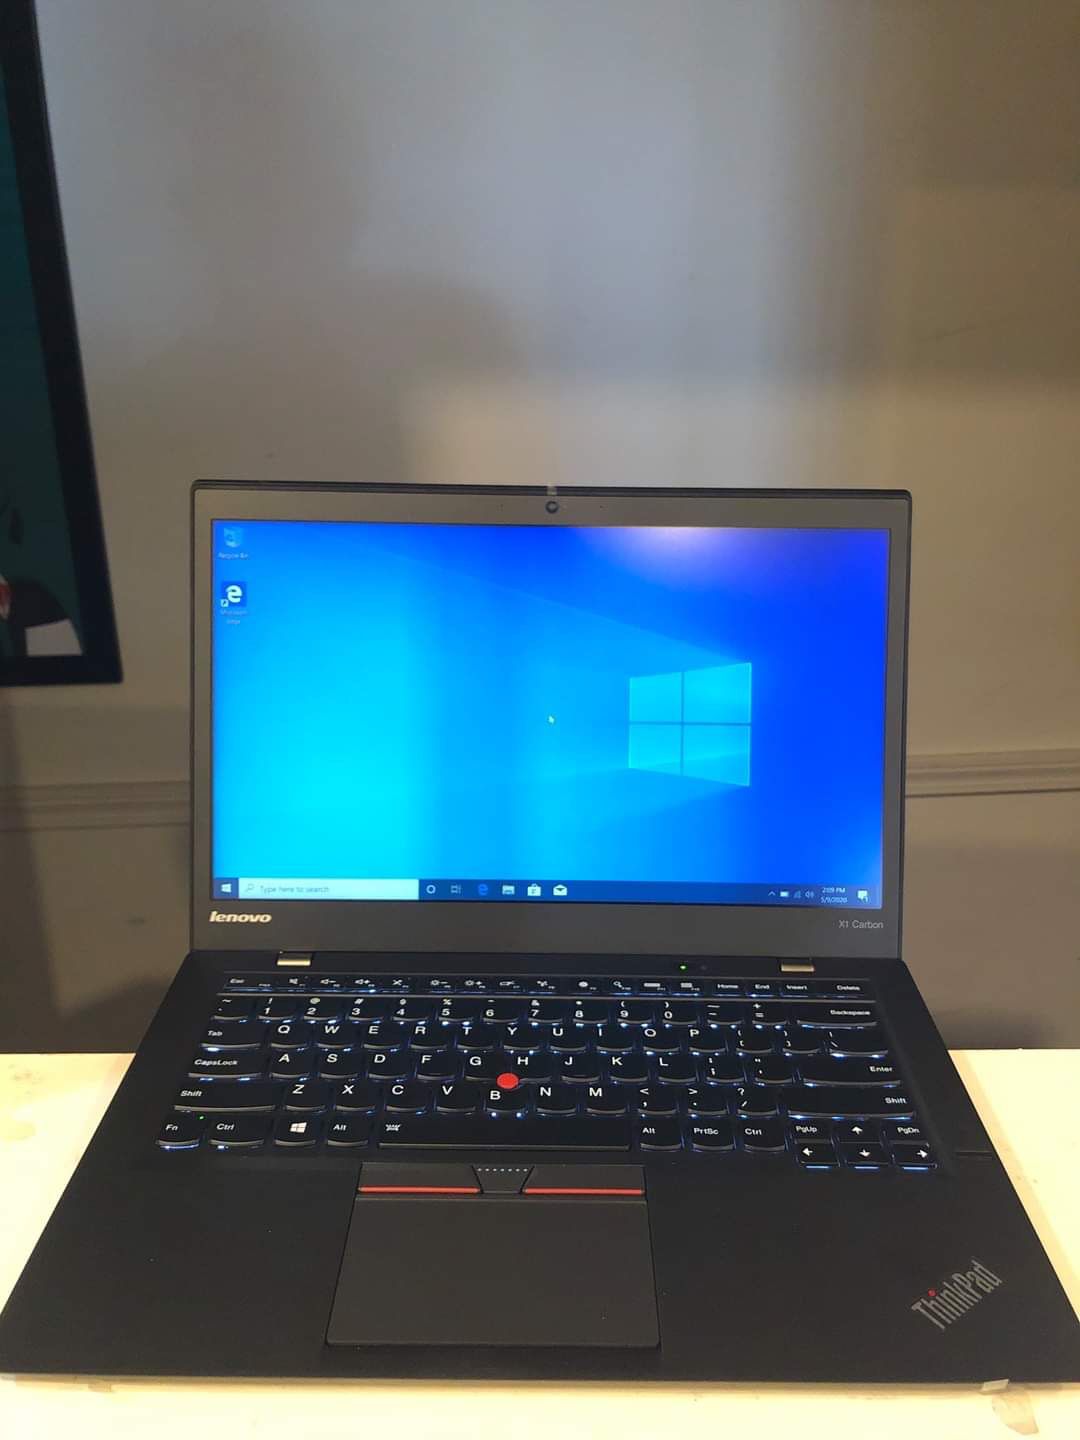 ThinkPad X1 Carbon i5-5300U, 4GB RAM, 192GB SSD, 14.1" LCD FHD 1920x1080